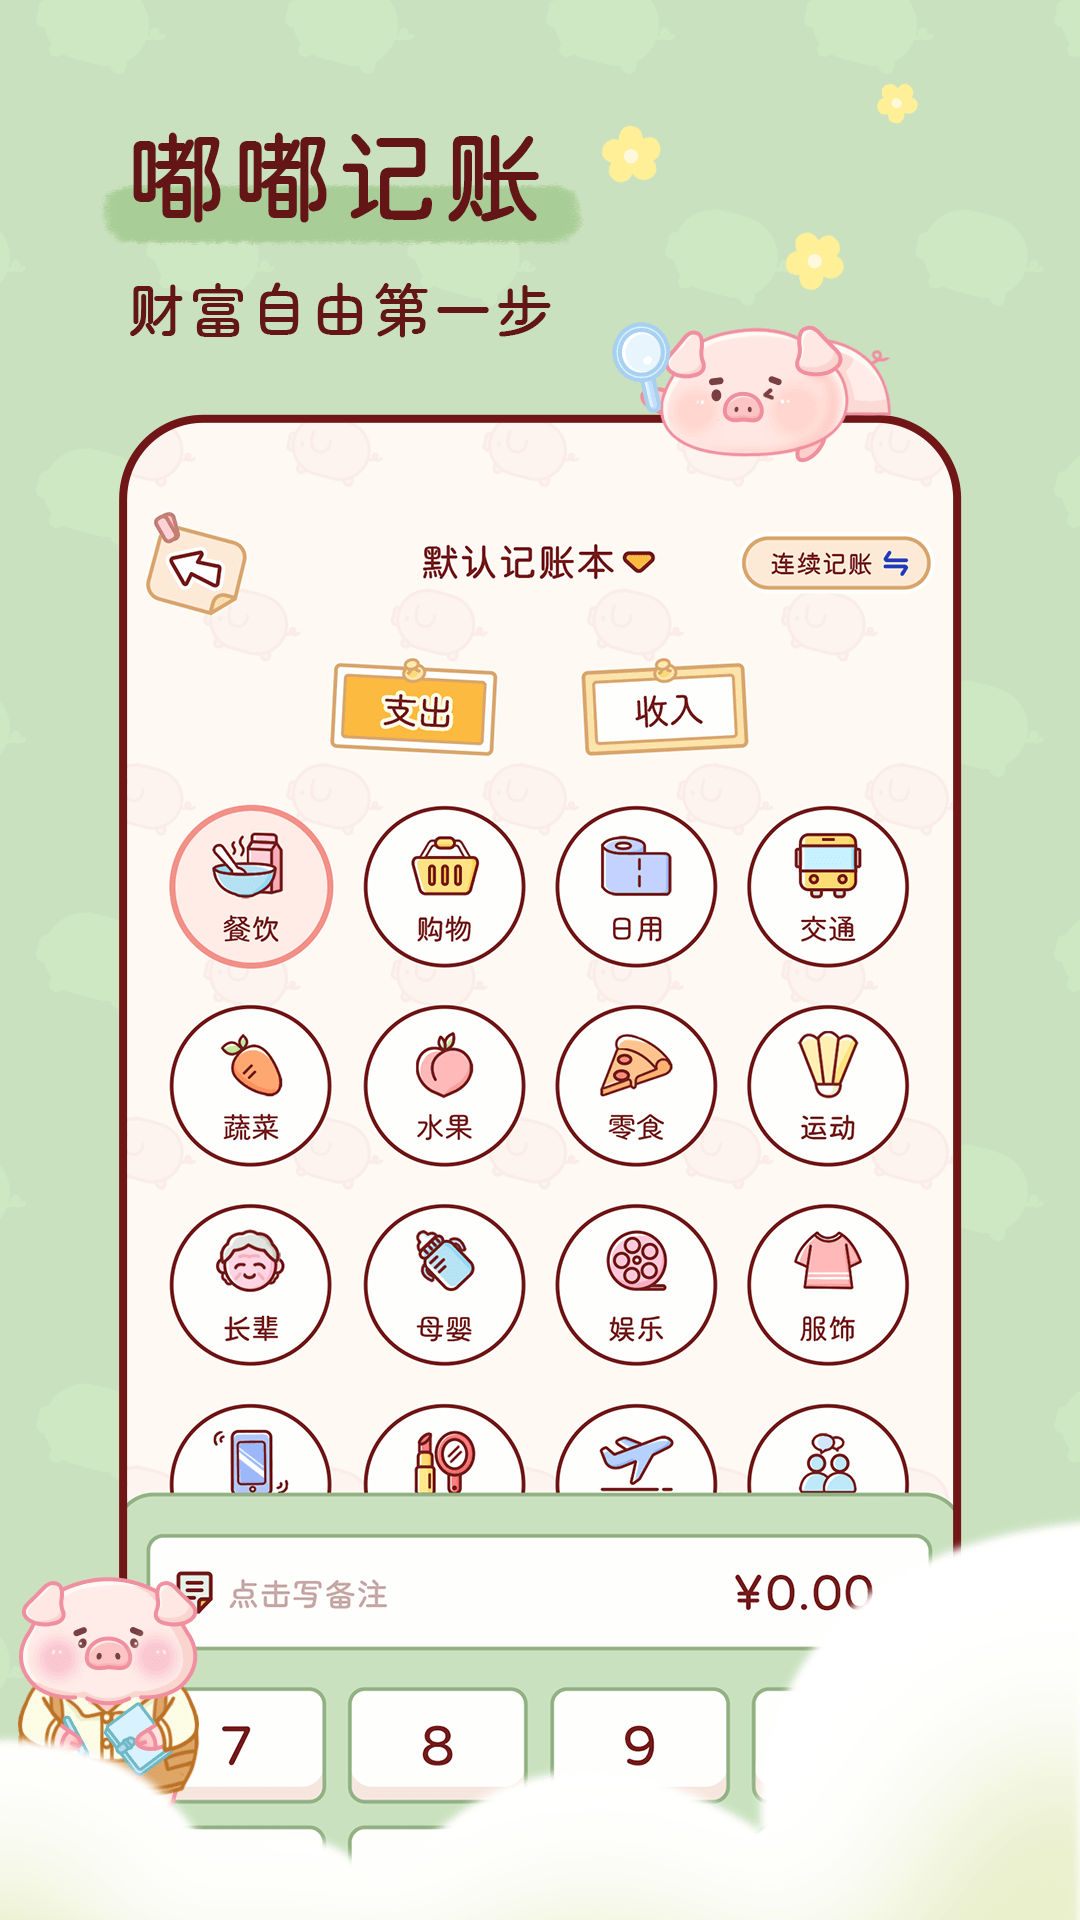 嘟嘟记账上海开发手机app开发